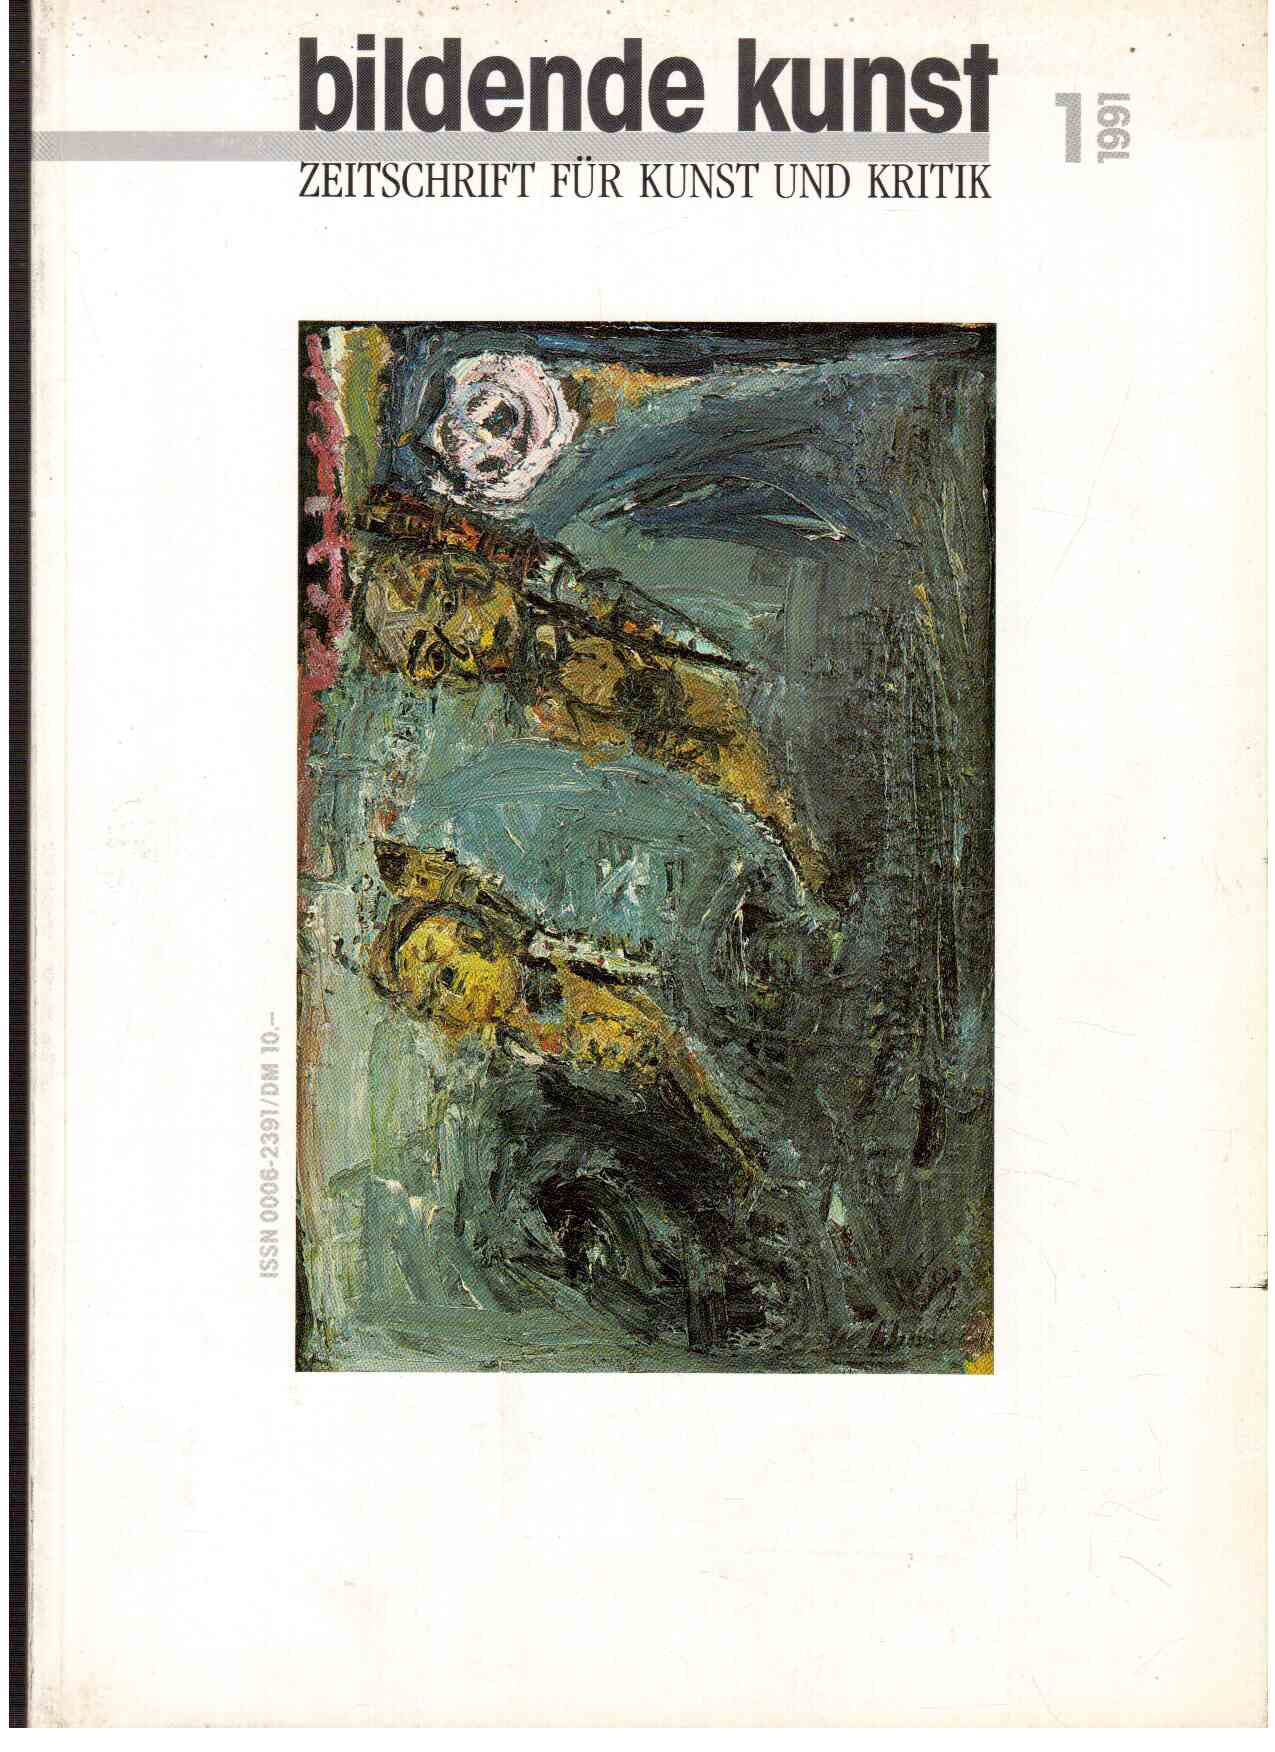 bildende kunst : Zeitschrift für Kunst und Kritik 1(1991)